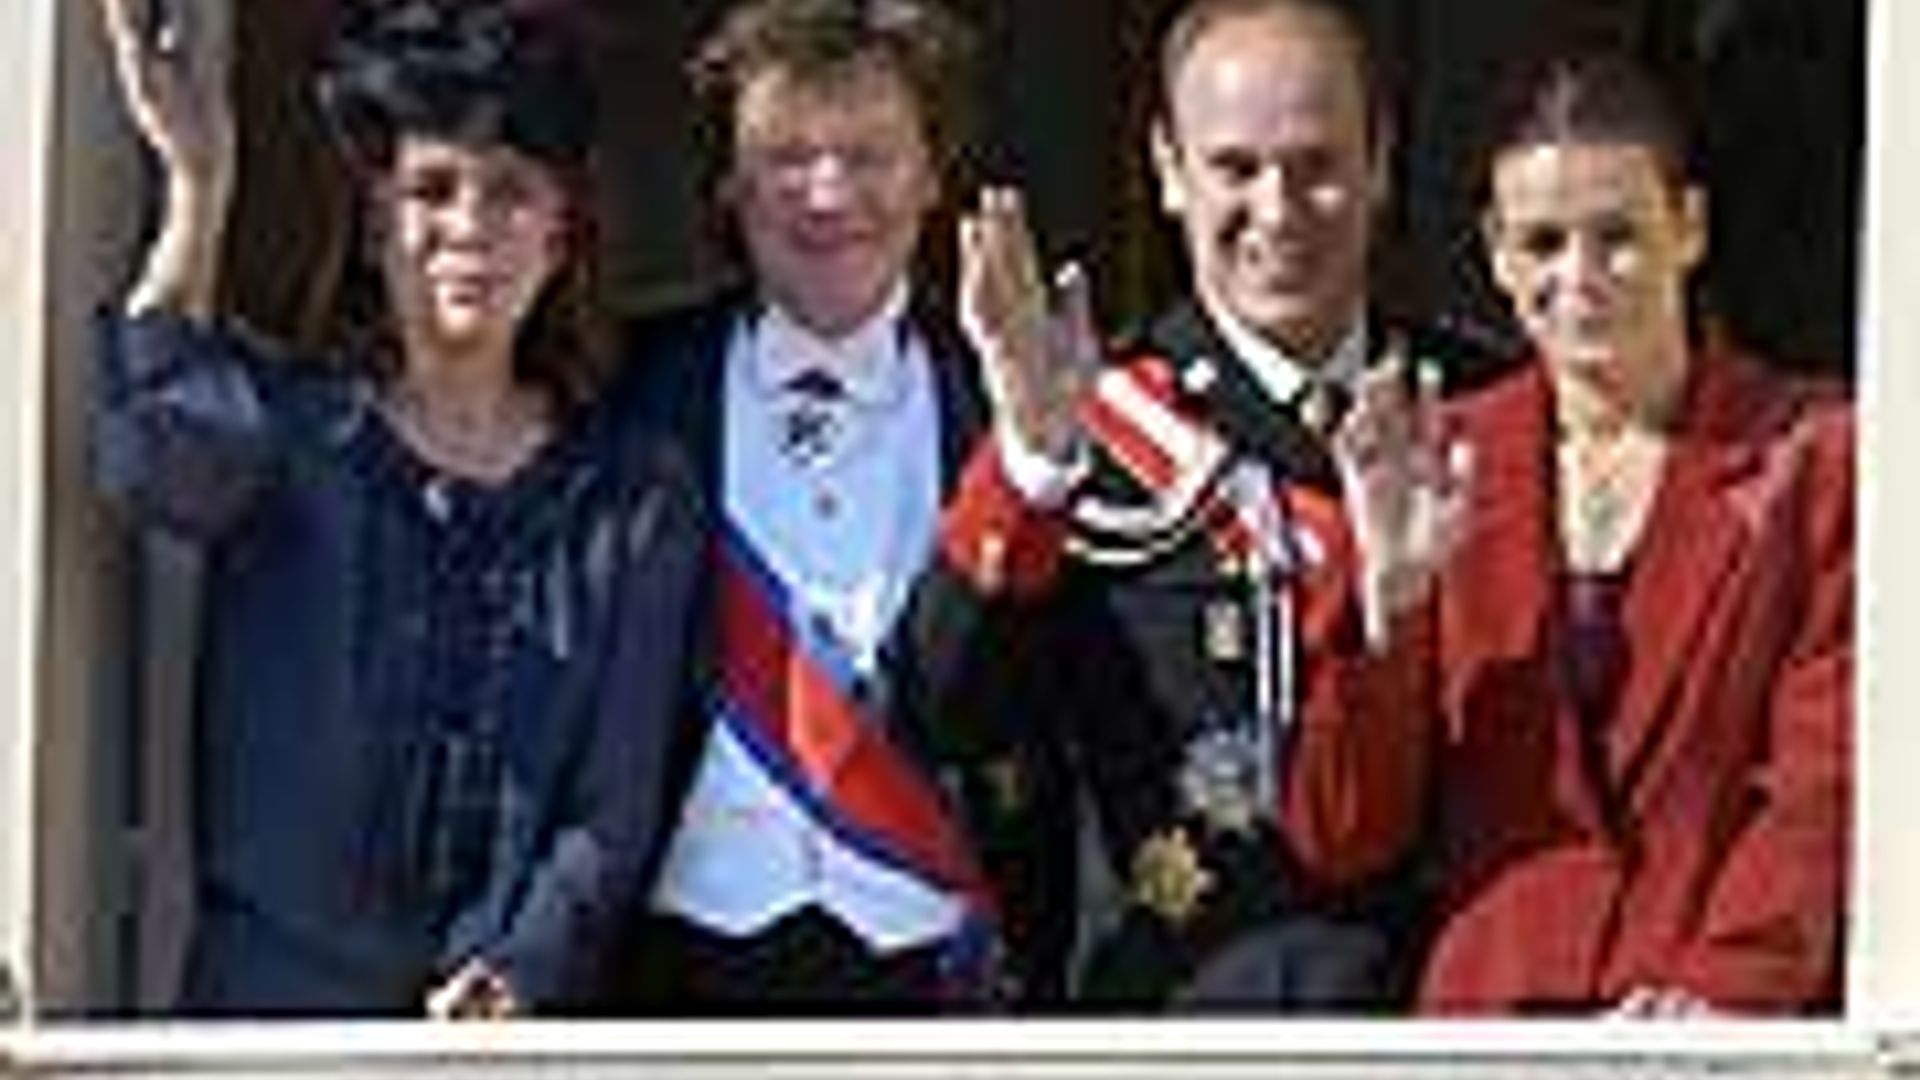 The Monegasque royal family